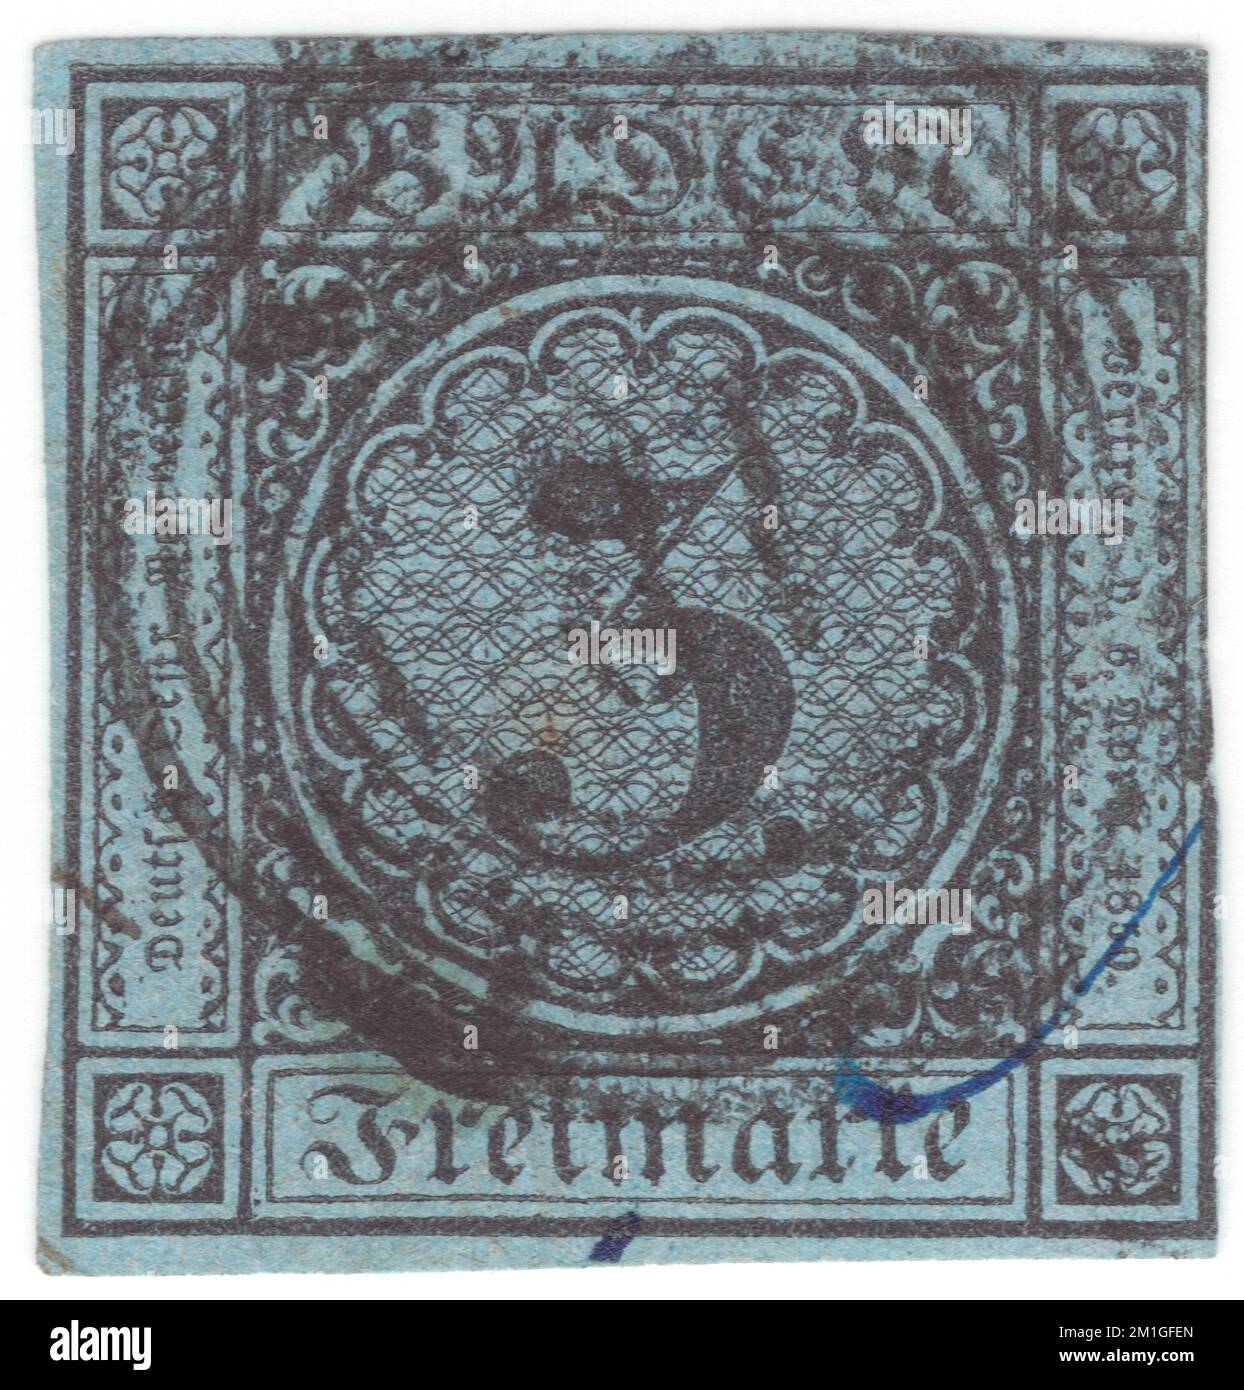 BADEN (einer der deutschen Bundesstaaten) — 1861: Originale, alte und seltene ultramarine Briefmarke mit 3 Kreuzer, die ein Wappen mit schattiertem Hintergrund hinter Arms zeigt Stockfoto